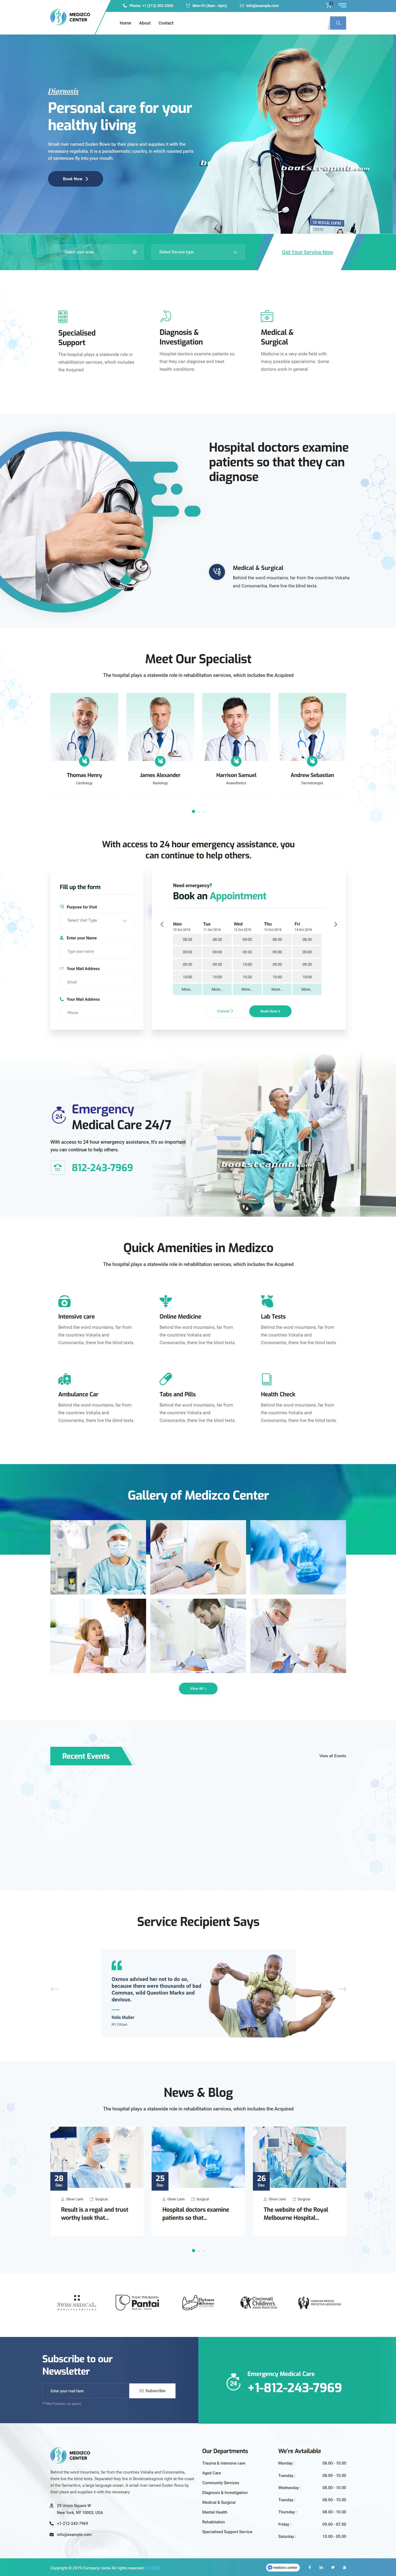 蓝色简洁风格响应式医疗康复网页模板